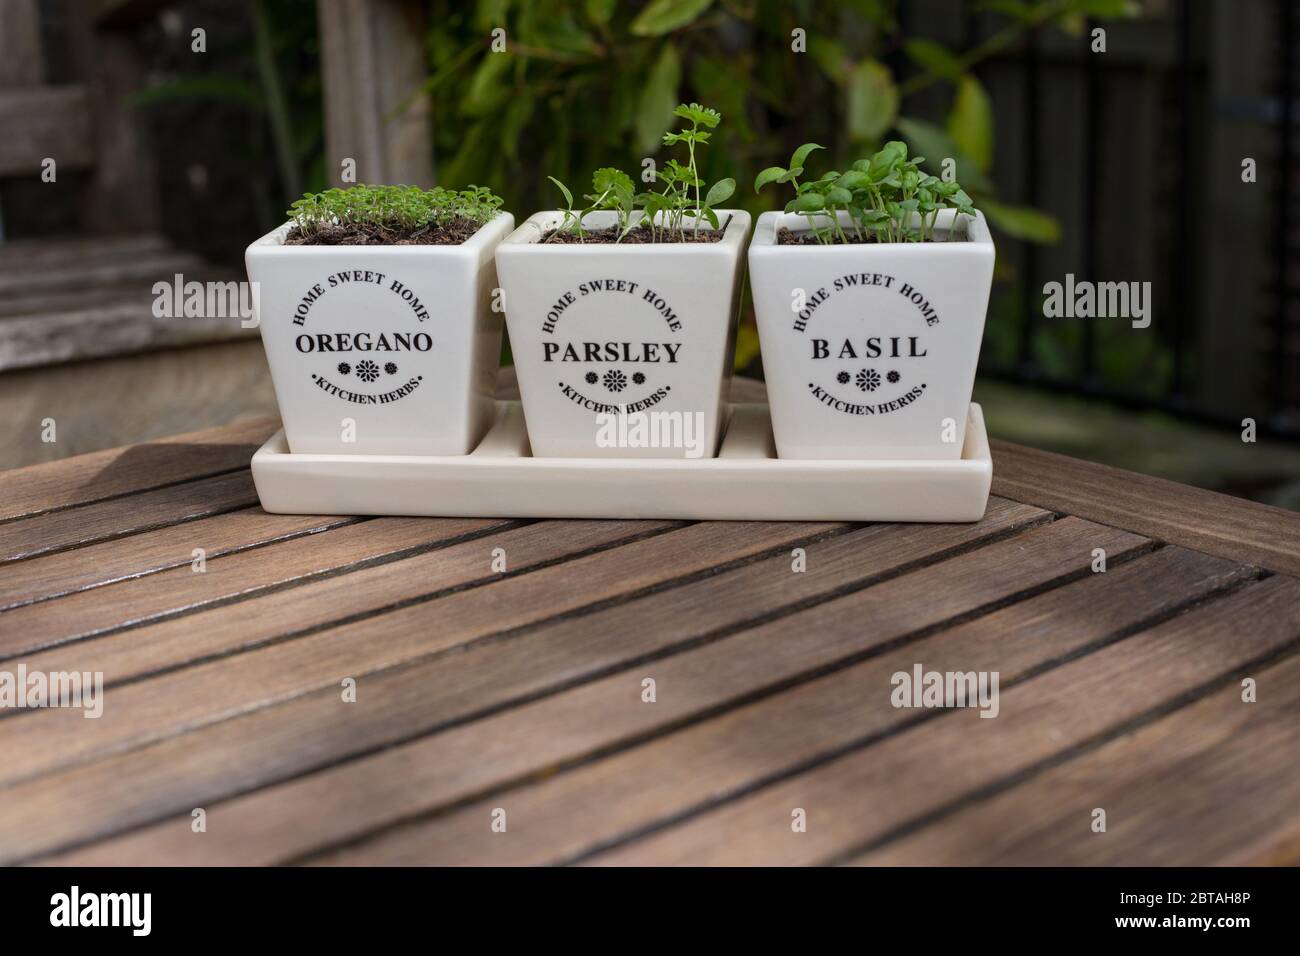 Drei Gartenkräuter, Oregano, Petersilie und Basilikum, wachsen in einem Set weißer, beschrifteter Töpfe auf einem Holztisch Stockfoto